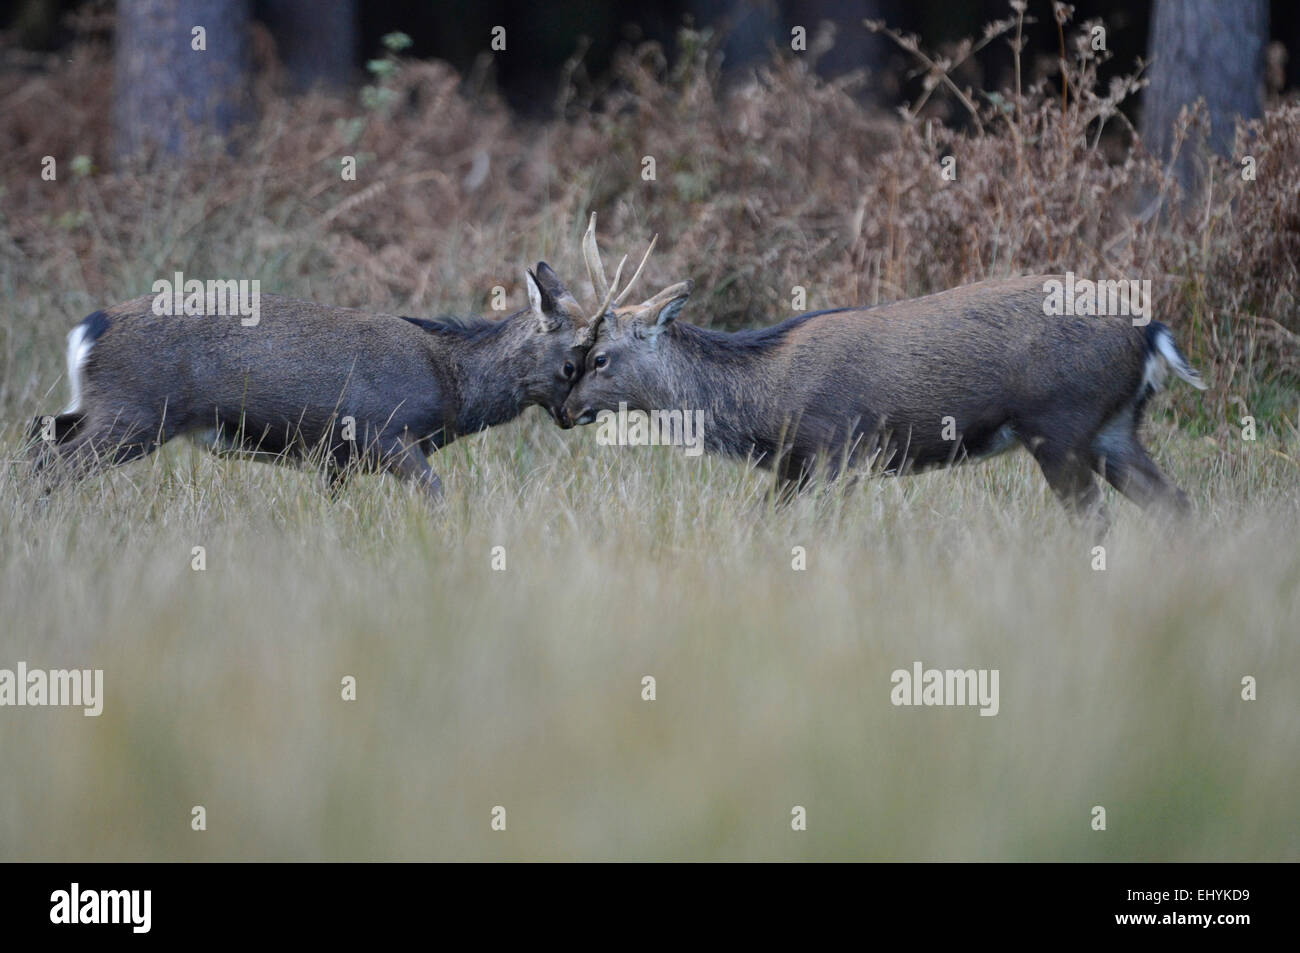 Japanese deer, animal, deer, Sika, Cervus nippon, Asian deer, Spotted deer, Asian deer, Germany Stock Photo